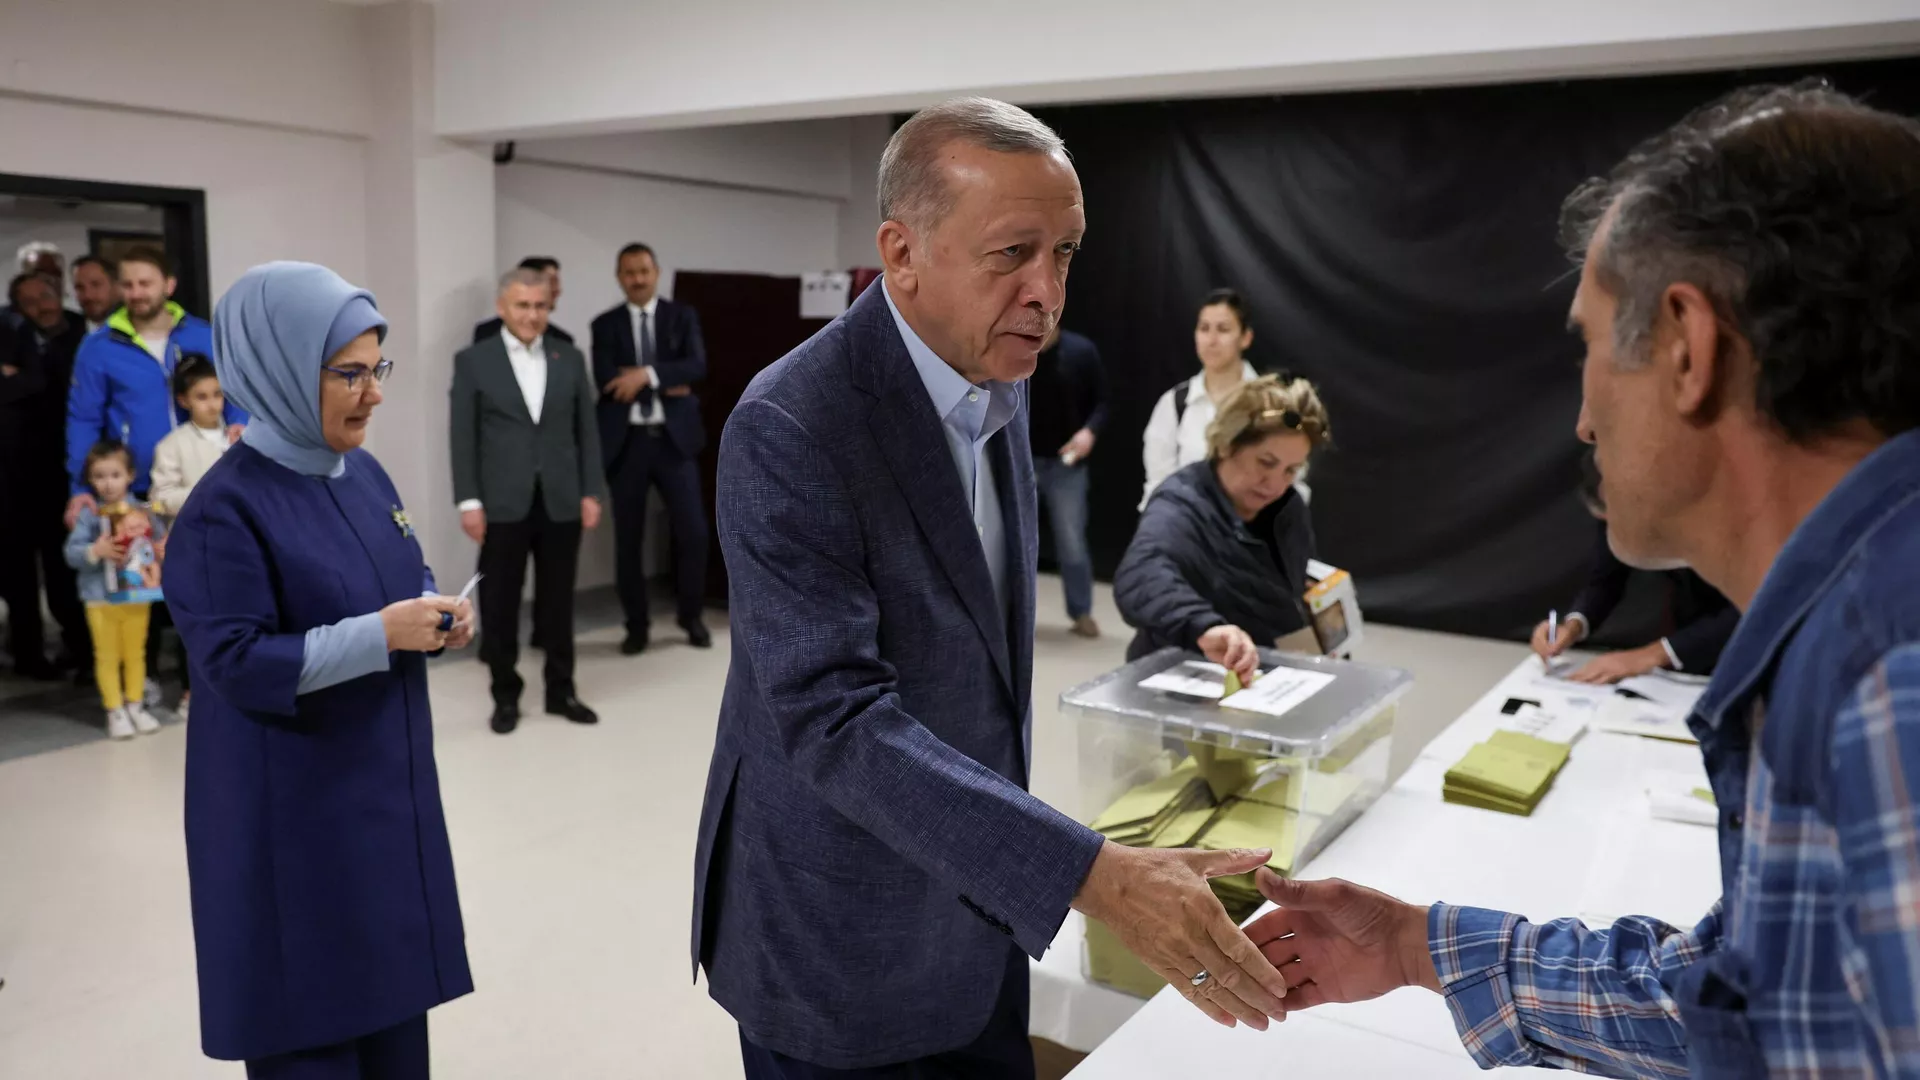 النتائج الأولية للانتخابات الرئاسية التركية… أردوغان يحصل على 59% مقابل 36% لكليجدار أوغلو